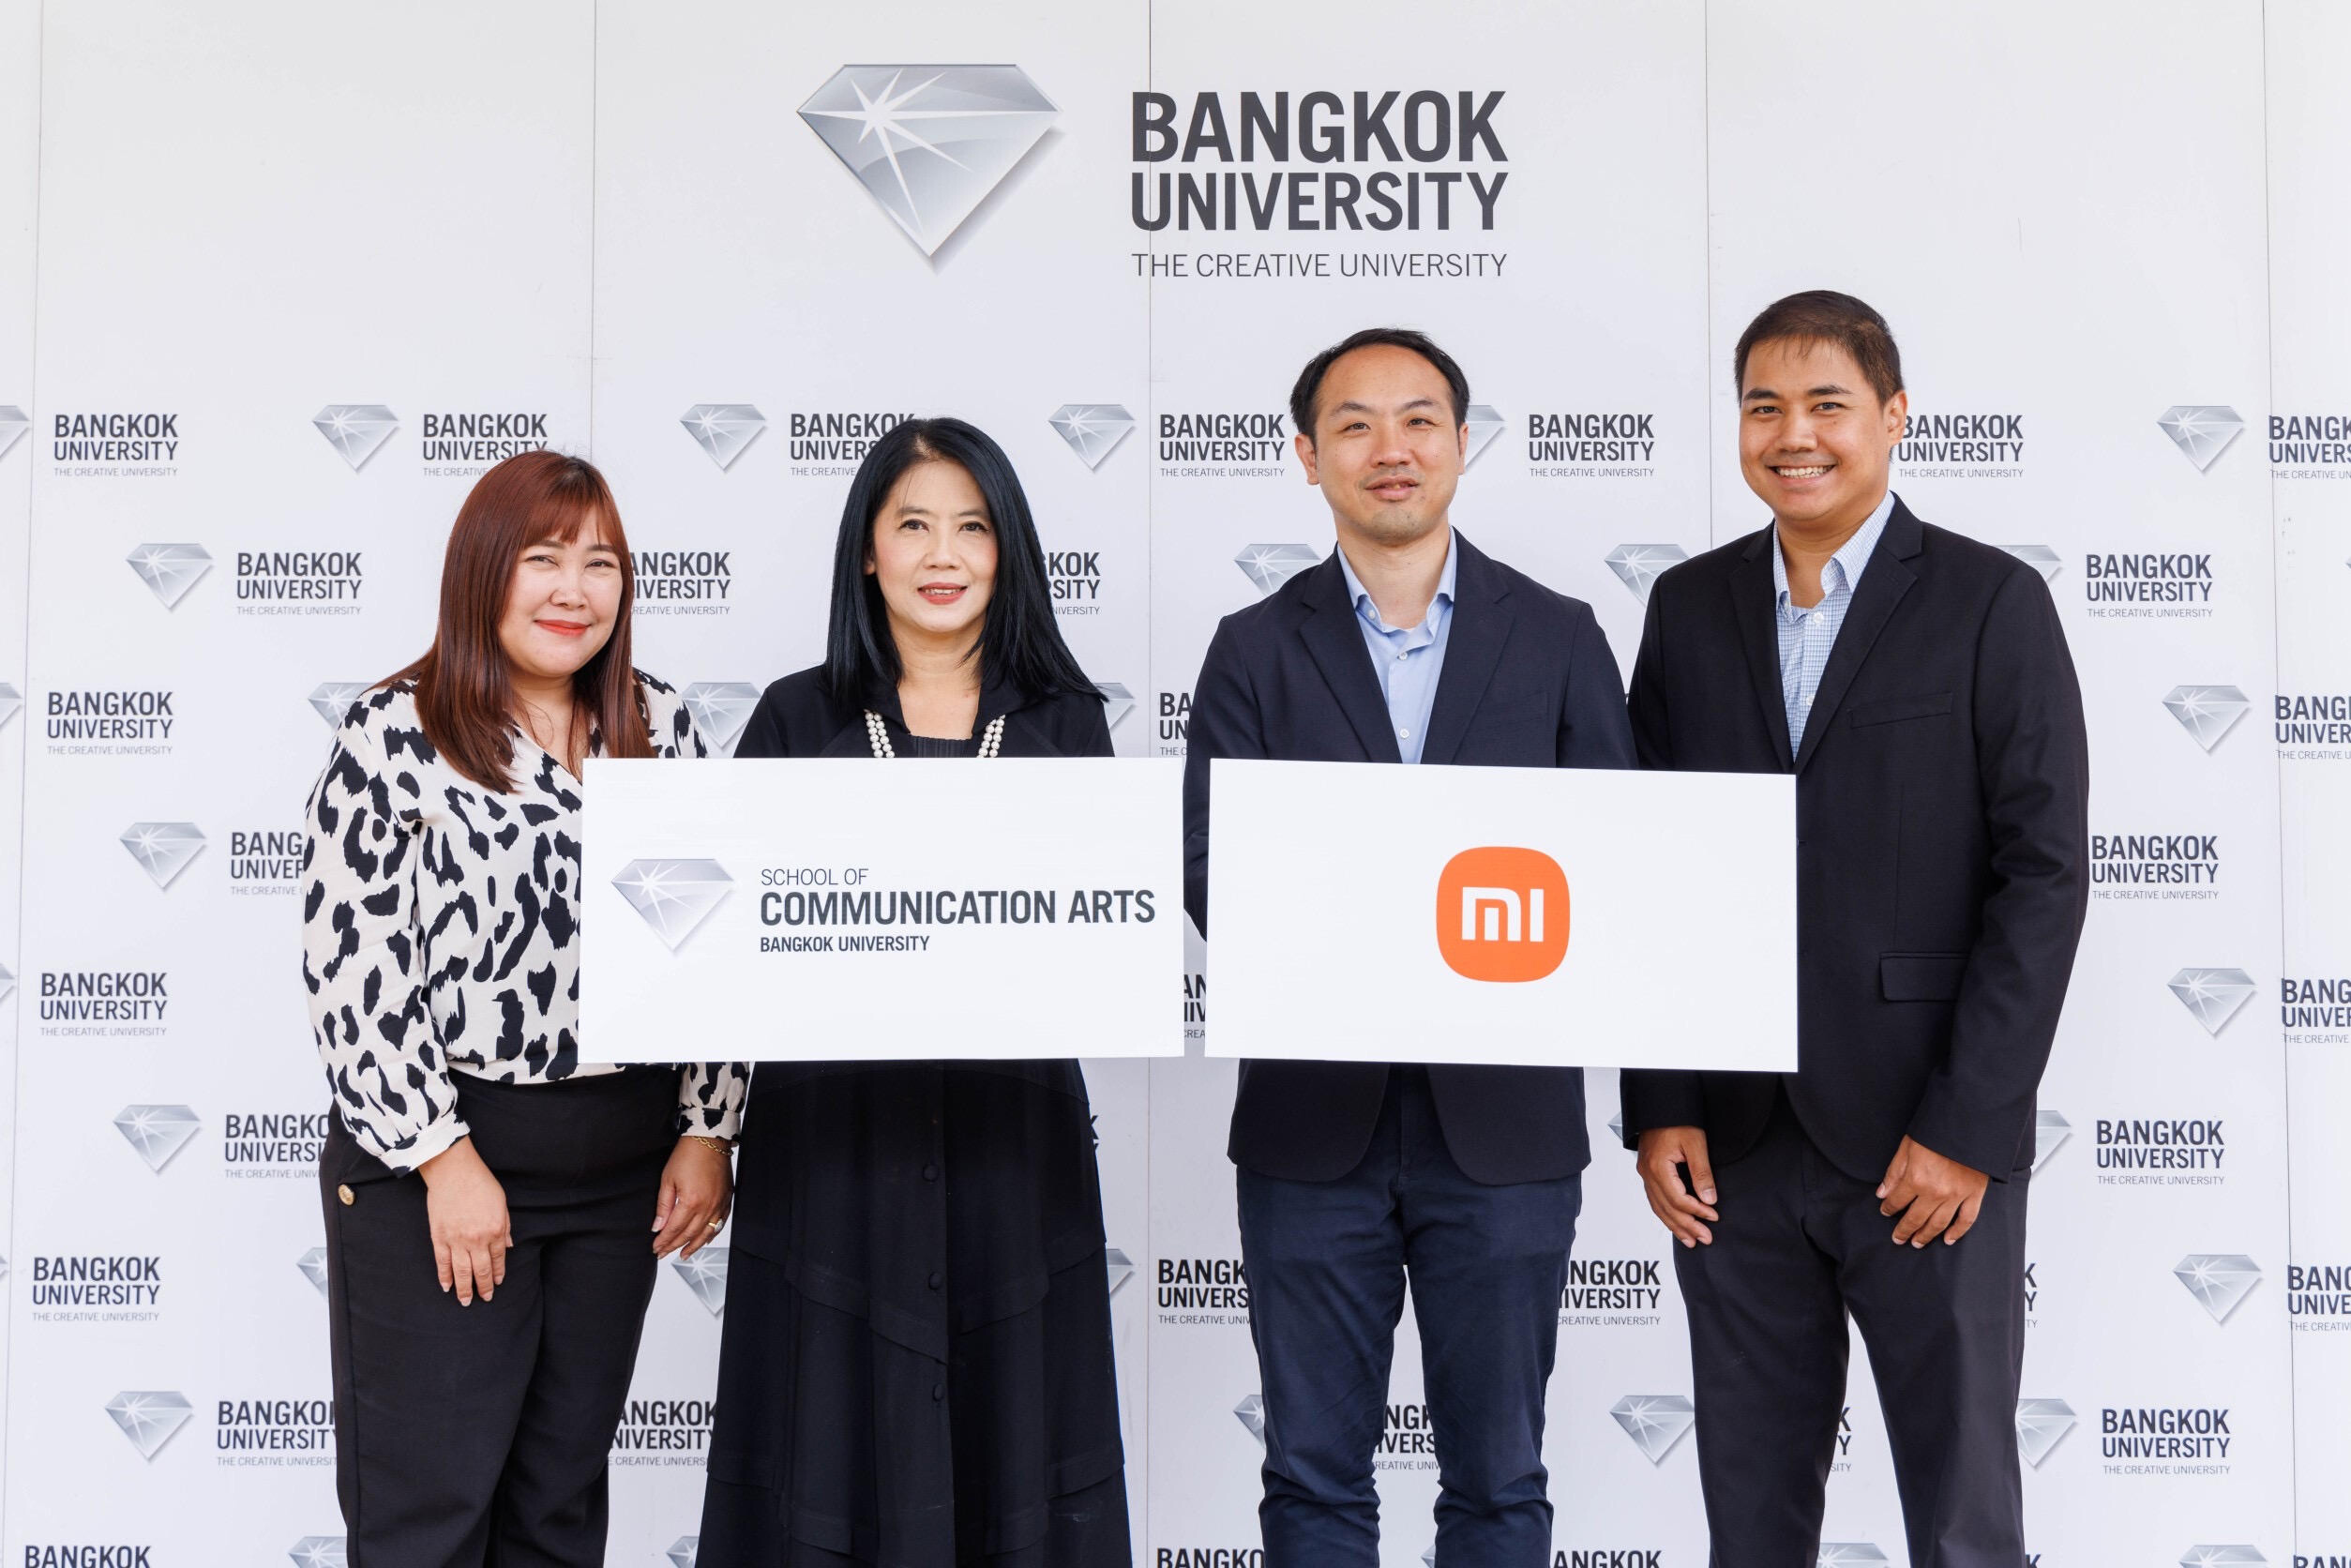 เสียวหมี่ ประเทศไทย จับมือ คณะนิเทศศาสตร์ มหาวิทยาลัยกรุงเทพ จัดคลาสบรรยายให้ความรู้เทคนิคการถ่ายภาพเชิงสร้างสรรค์ พร้อมจัดการประกวดถ่ายภาพชิงรางวัลผ่านโครงการ "Xiaomi Imagery Award 2023"